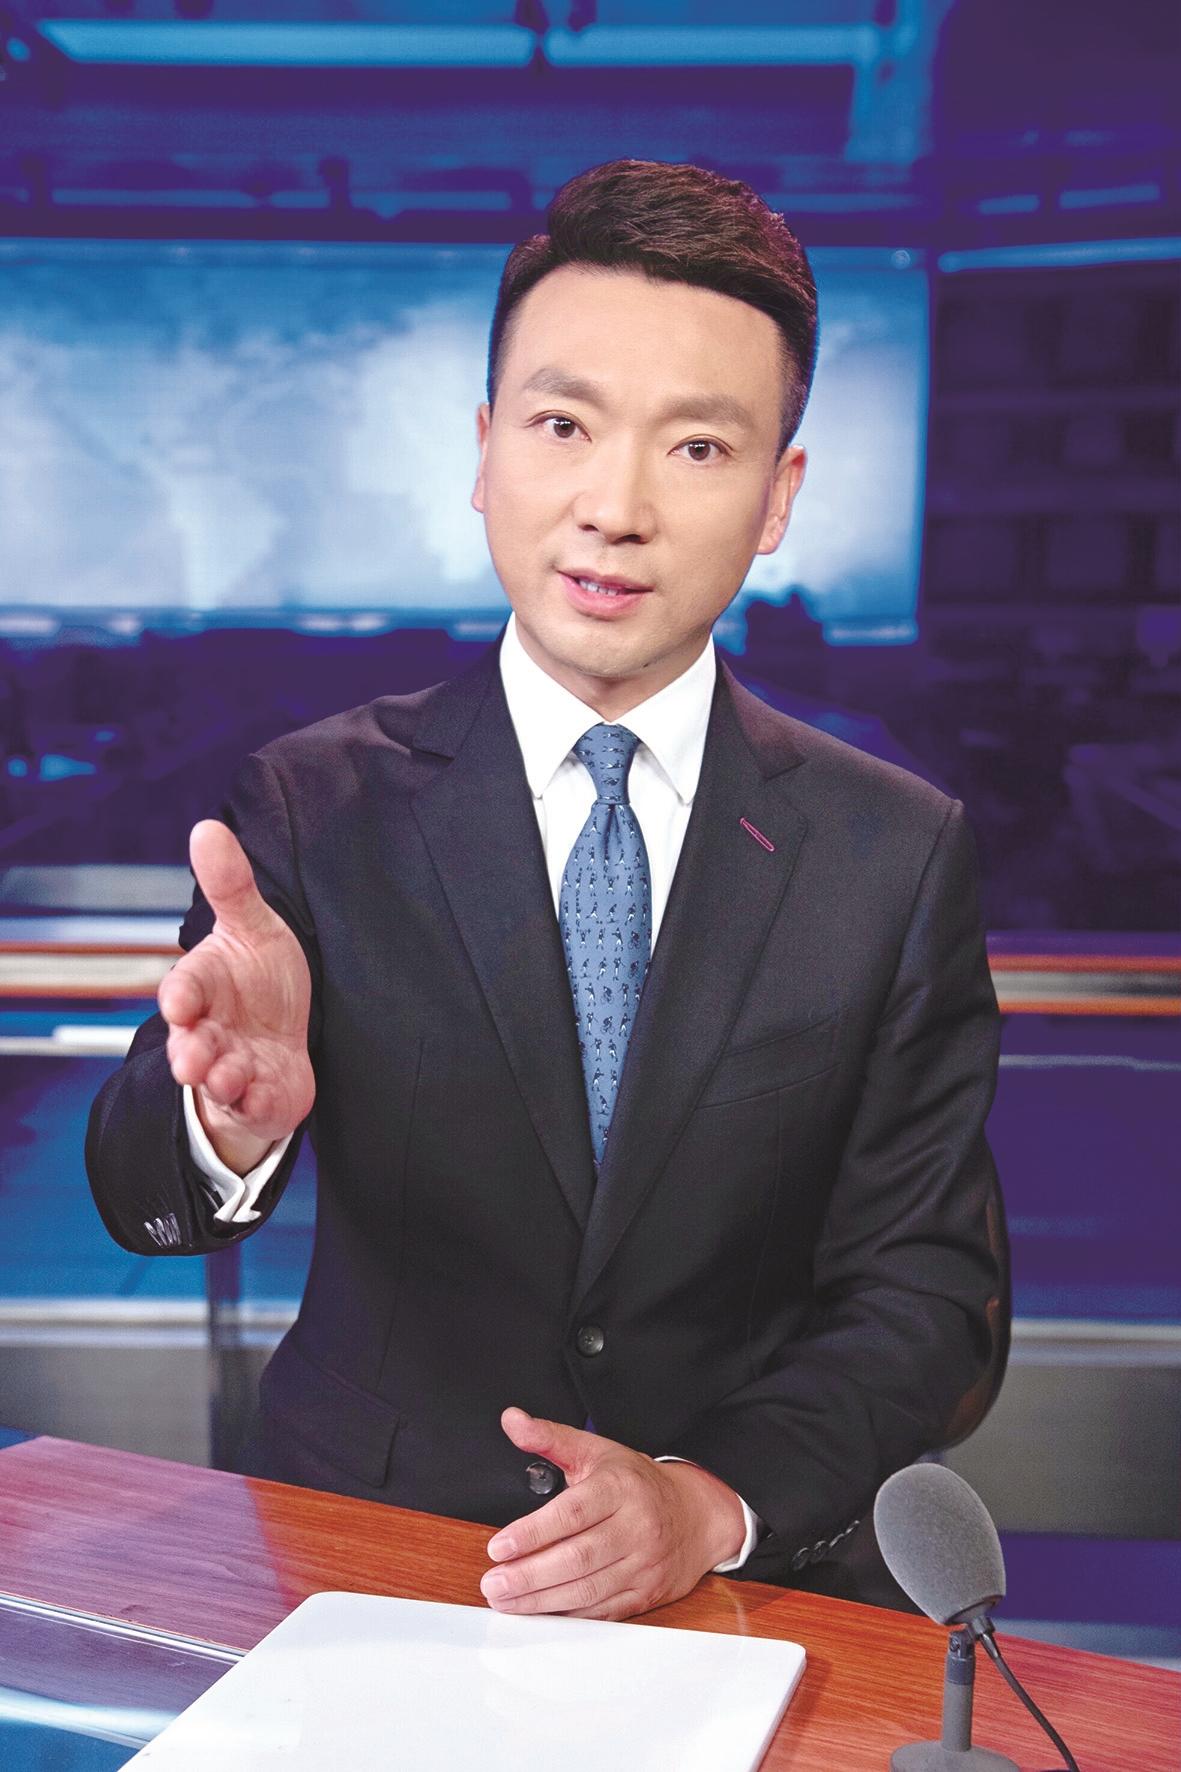 徐 颖人物档案康辉,中央广播电视总台央视《新闻联播》主播,入选全国